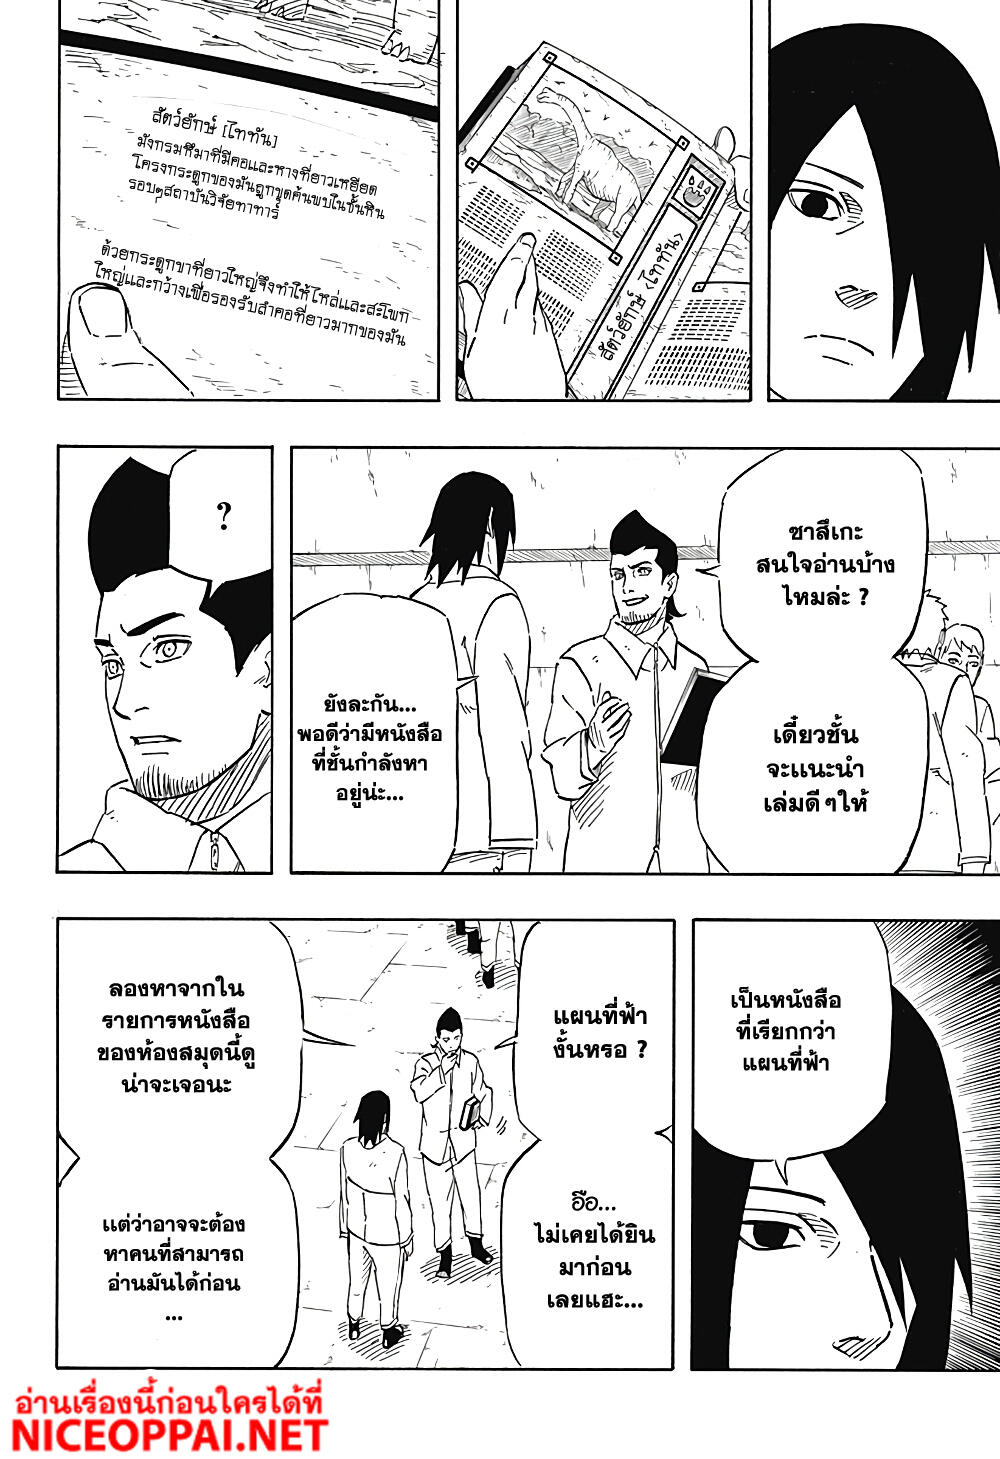 Naruto Sasuke's Story -The Uchiha and the Heavenly Stardust 4-4